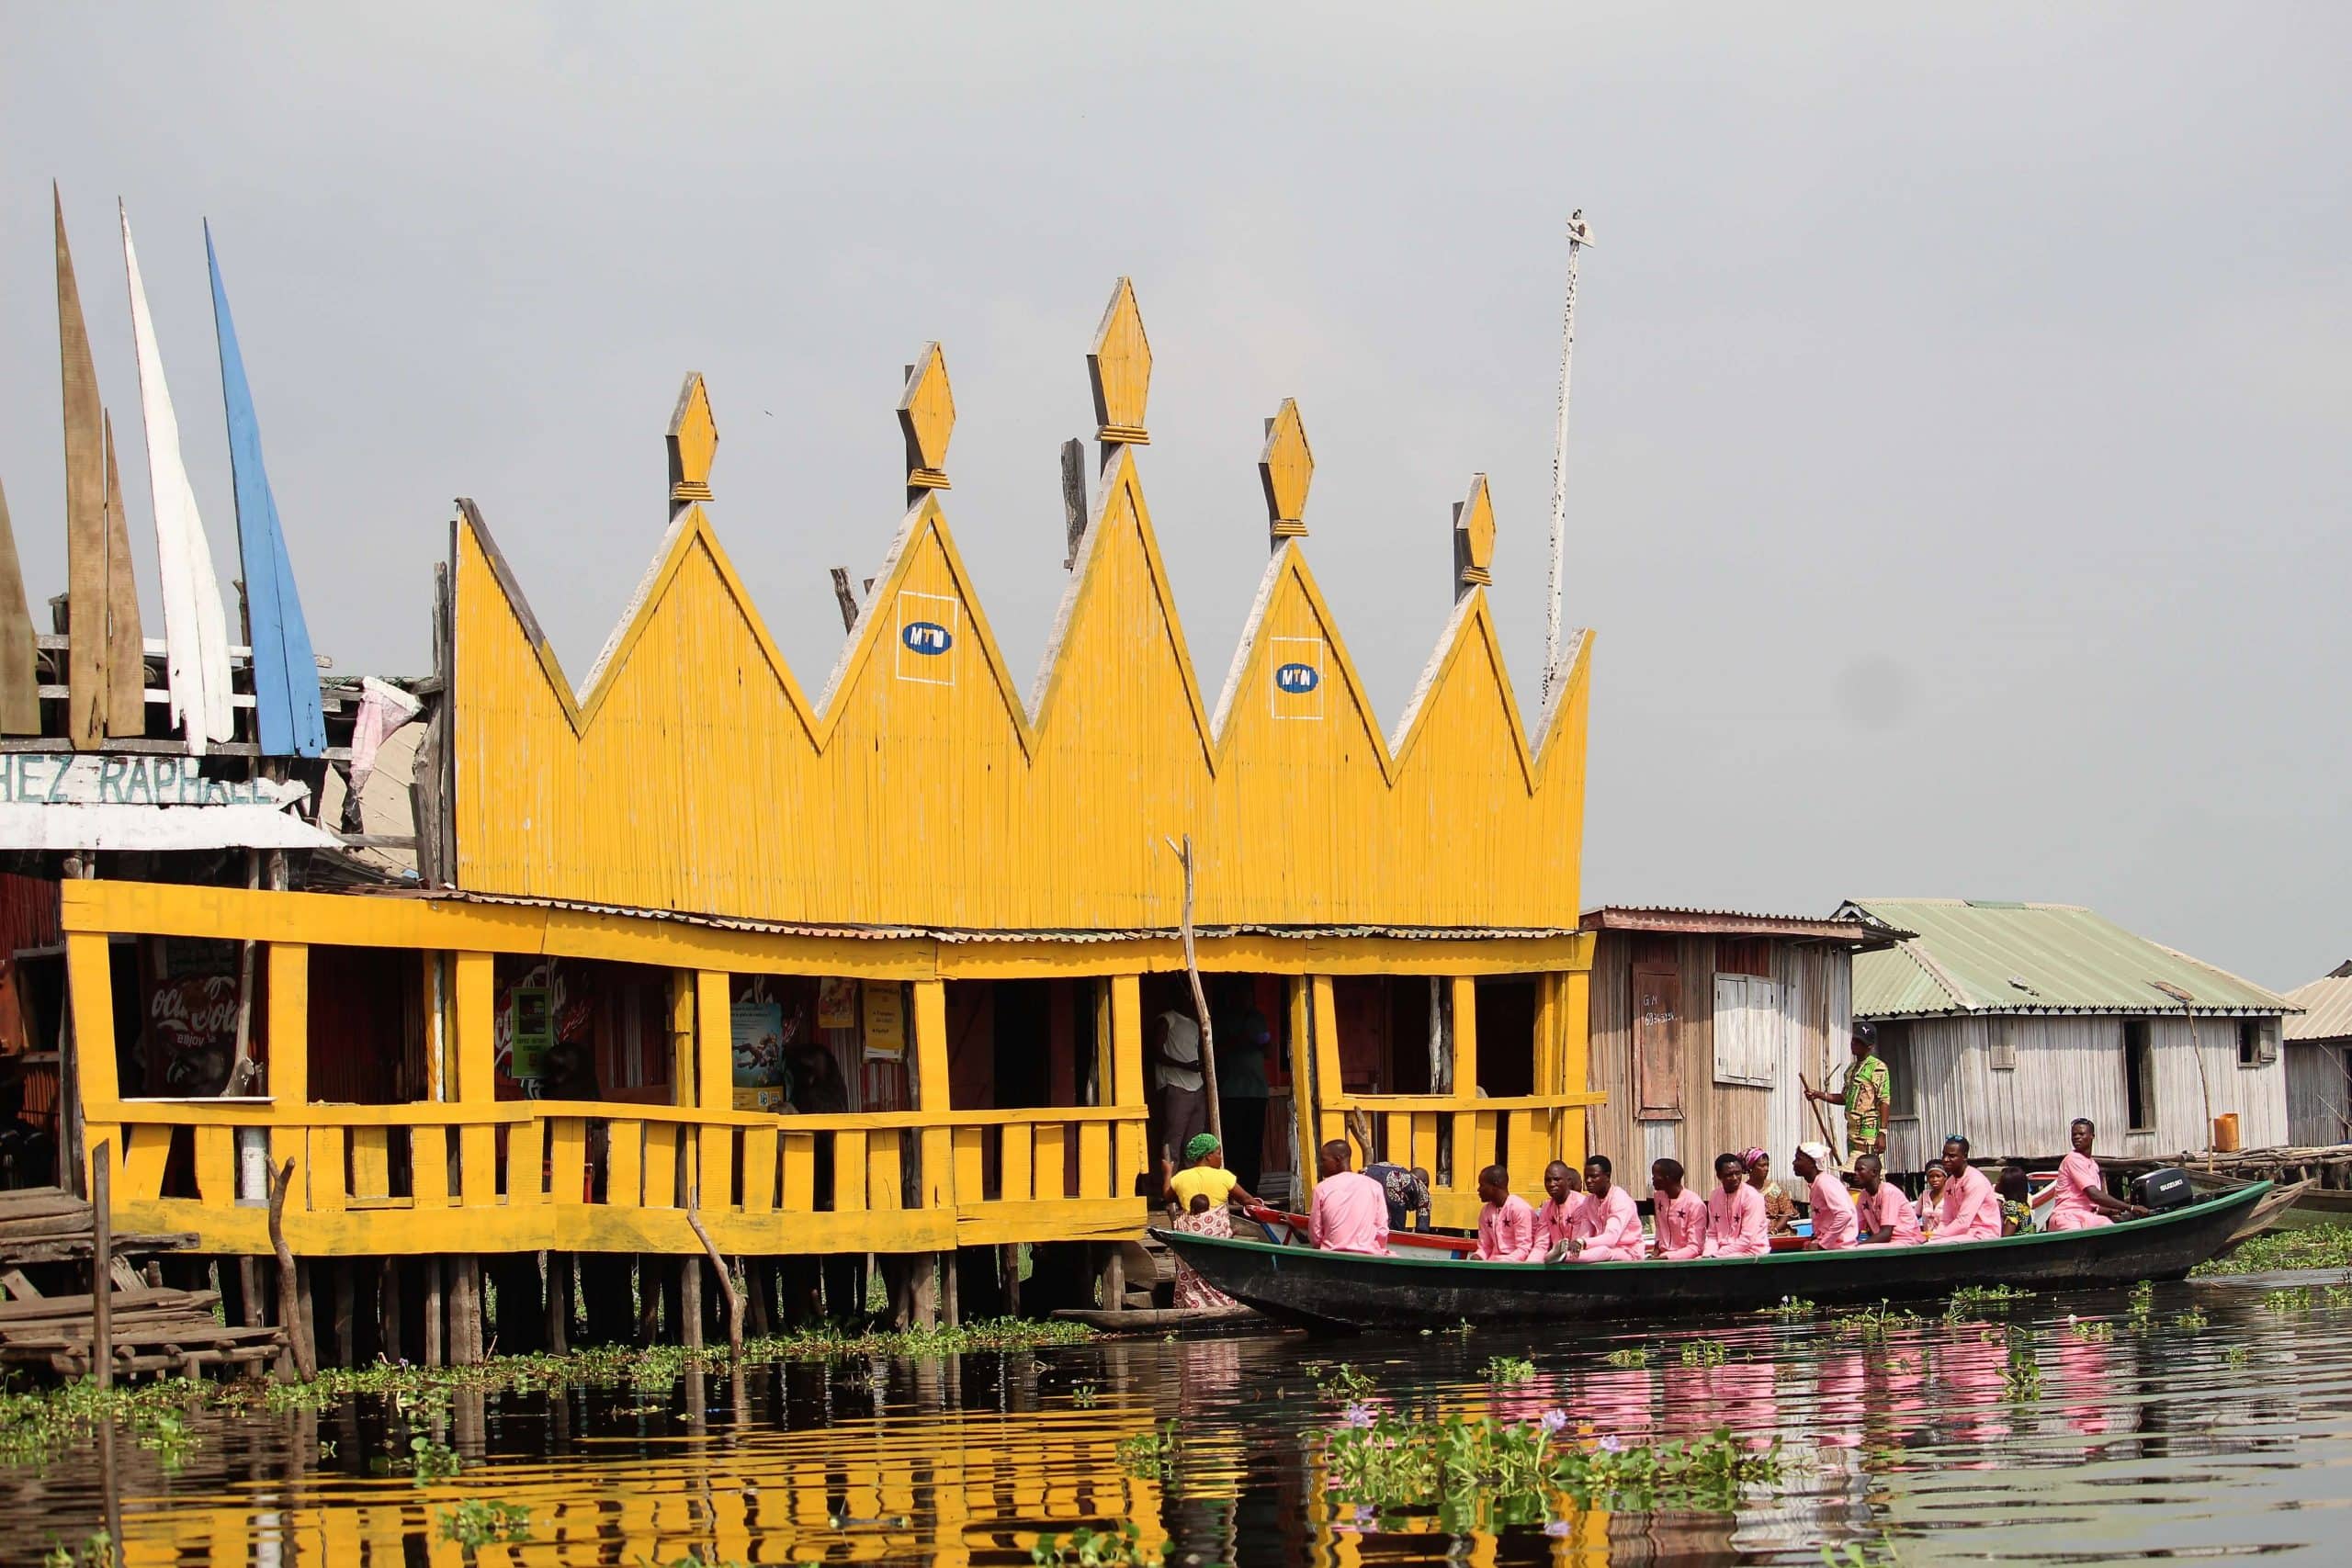 Floating hotel in Ganvie, Benin